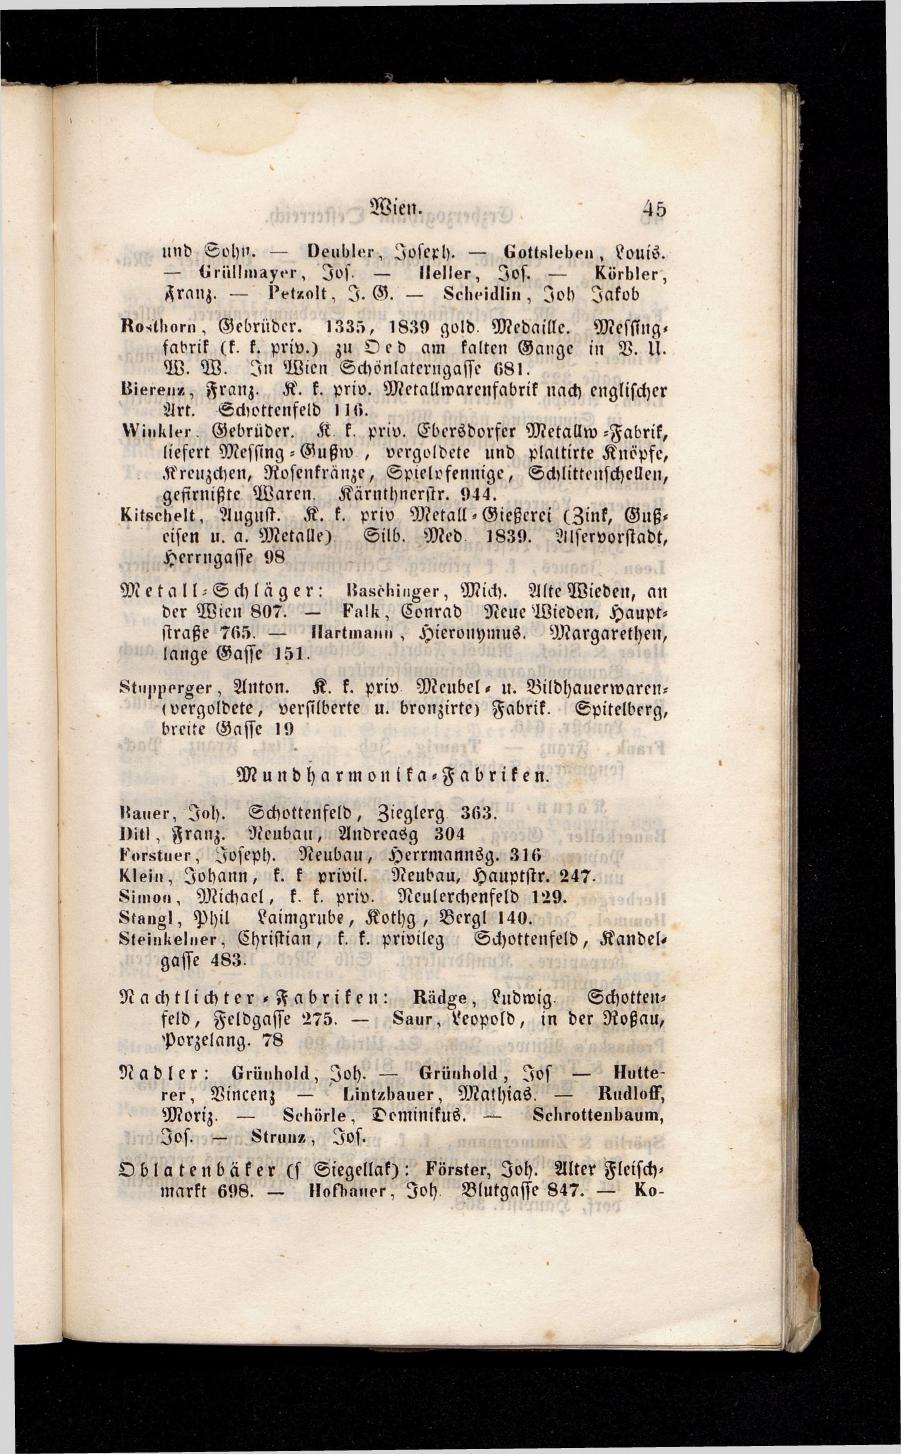 Grosses Adressbuch der Kaufleute. No. 13. Oesterreich ober u. unter der Enns 1844 - Seite 49